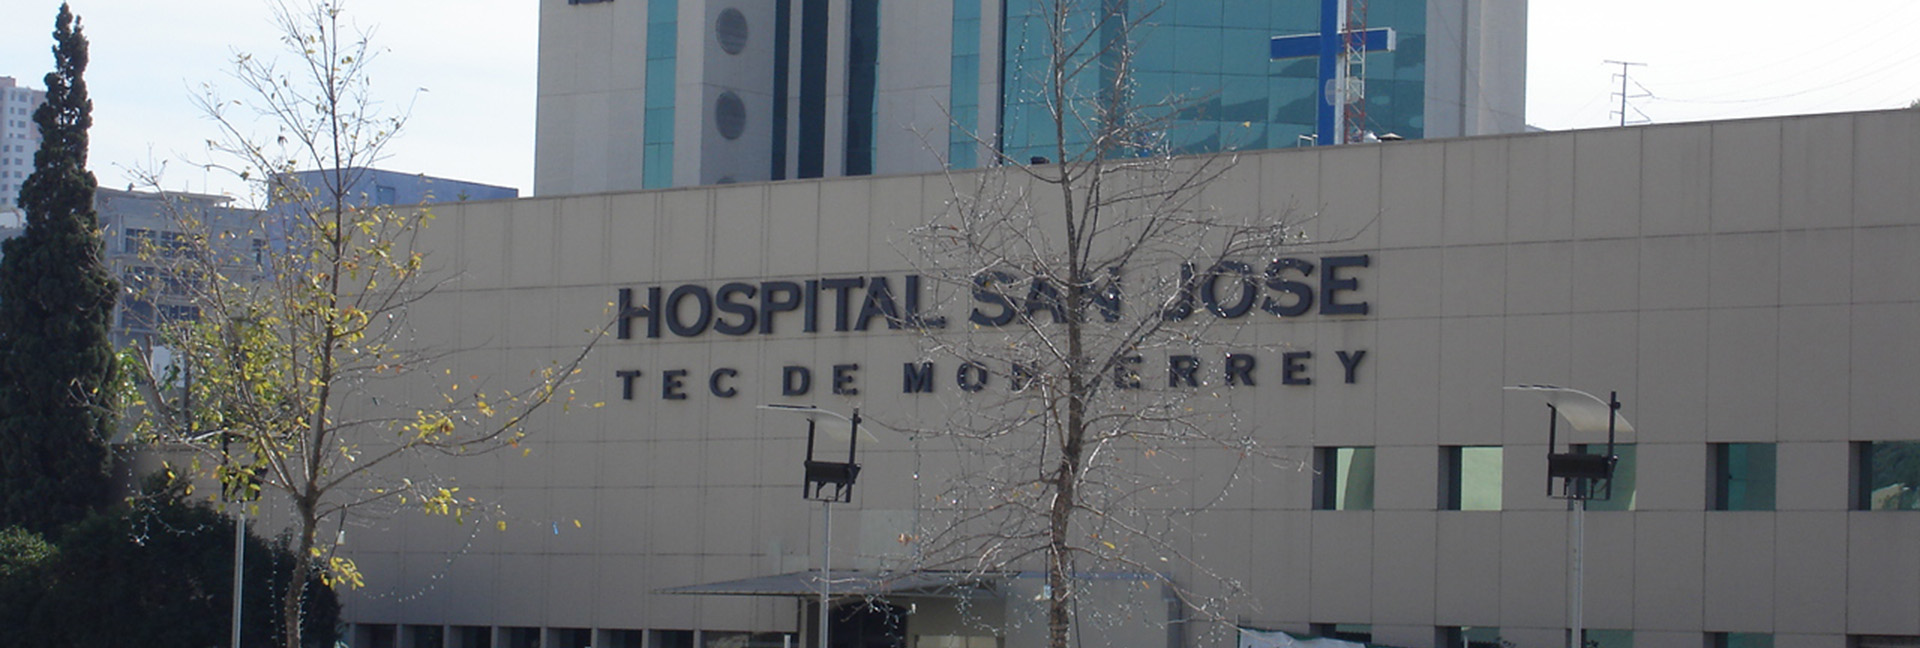 Hospital San José Tec de Monterrey